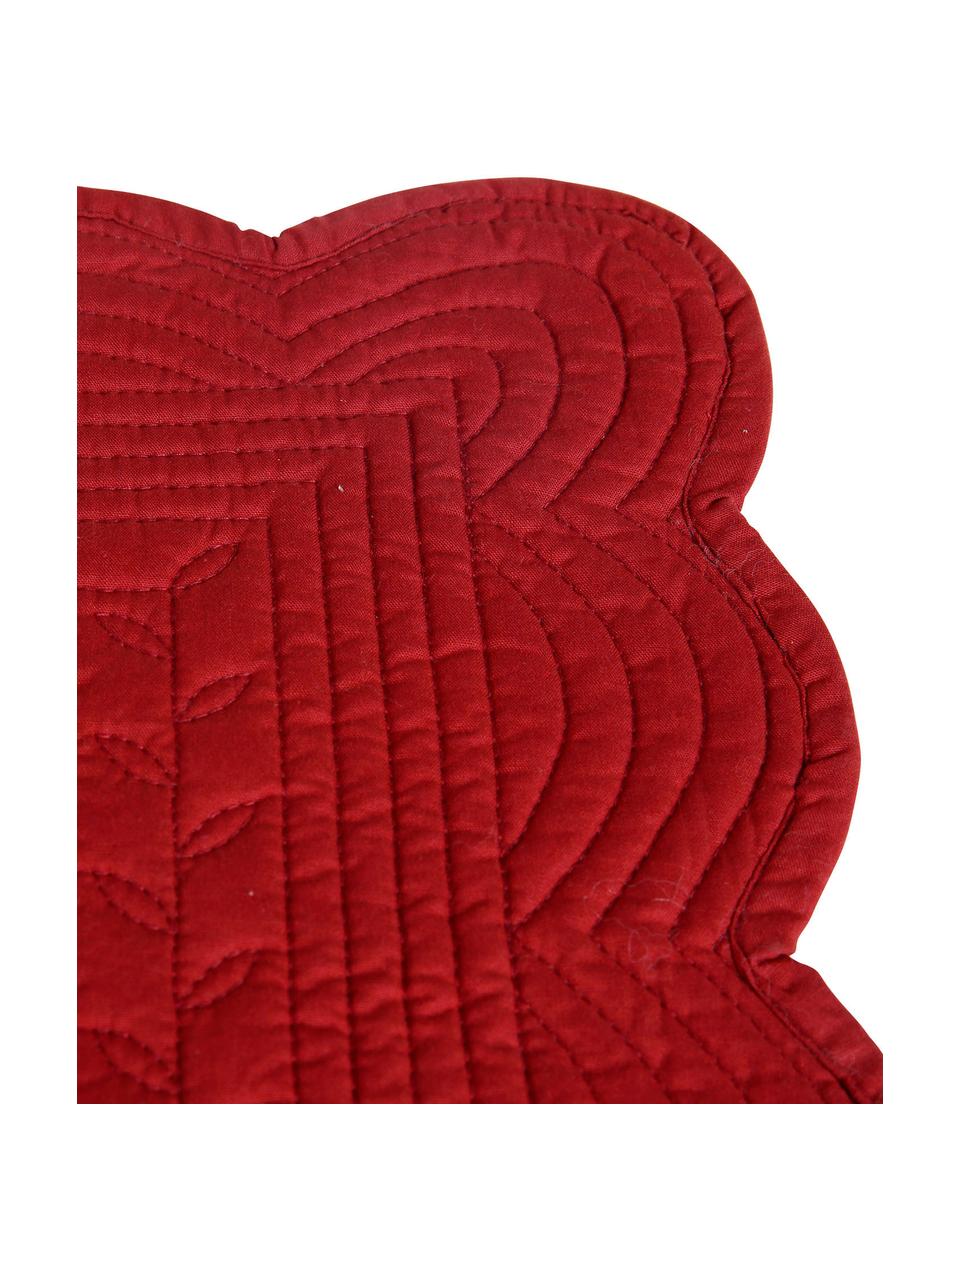 Tischsets Boutis, 2 Stück, Baumwolle, Rot, B 49 x L 34 cm